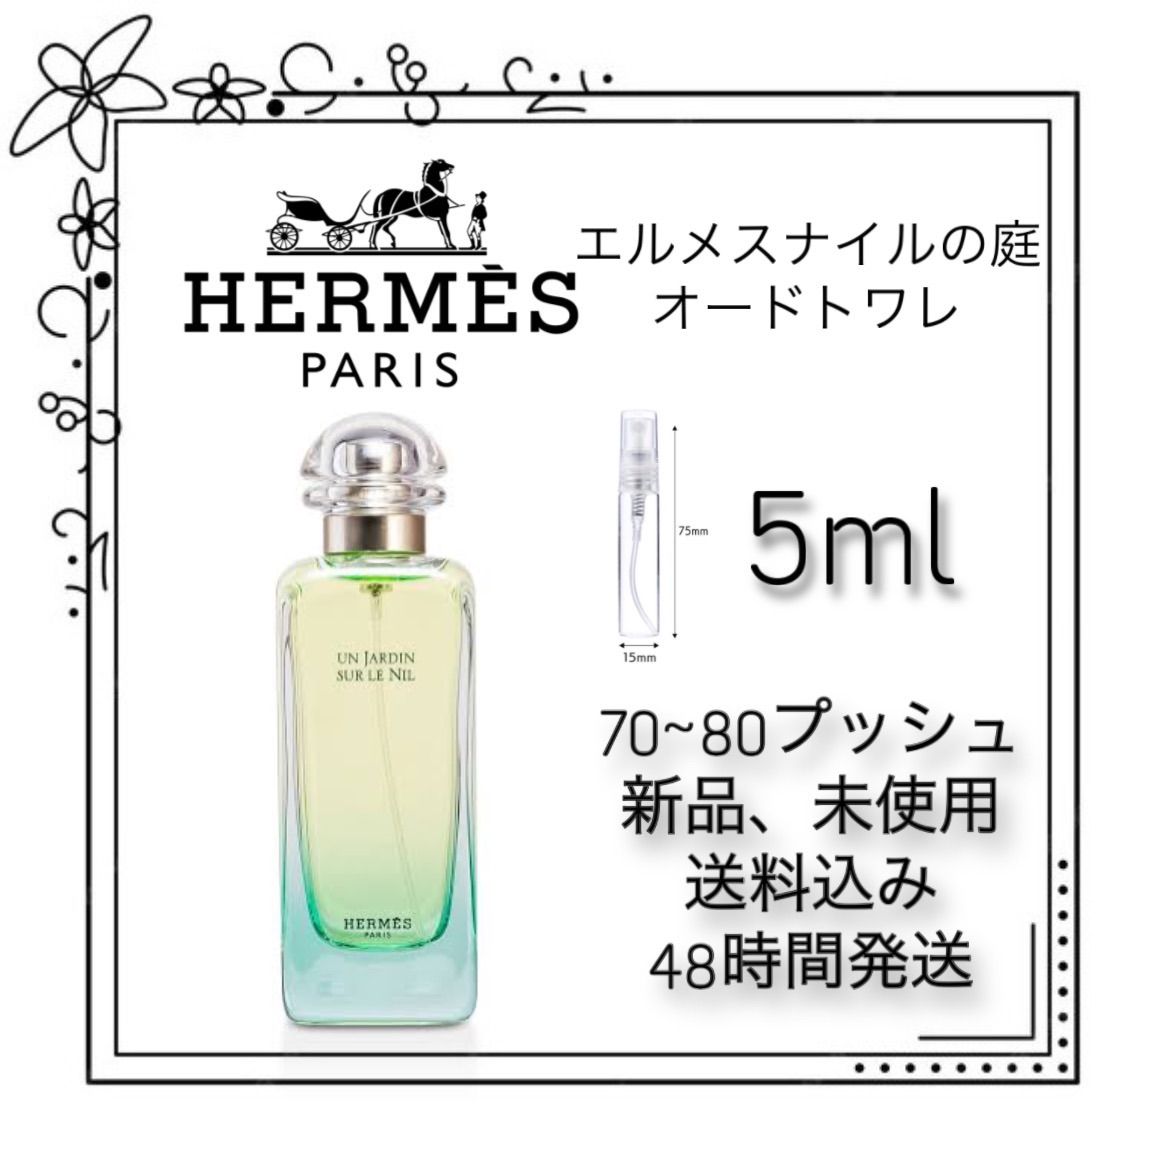 HERMES 香水×2本セット 持ち歩き 試供品 - 香水(ユニセックス)